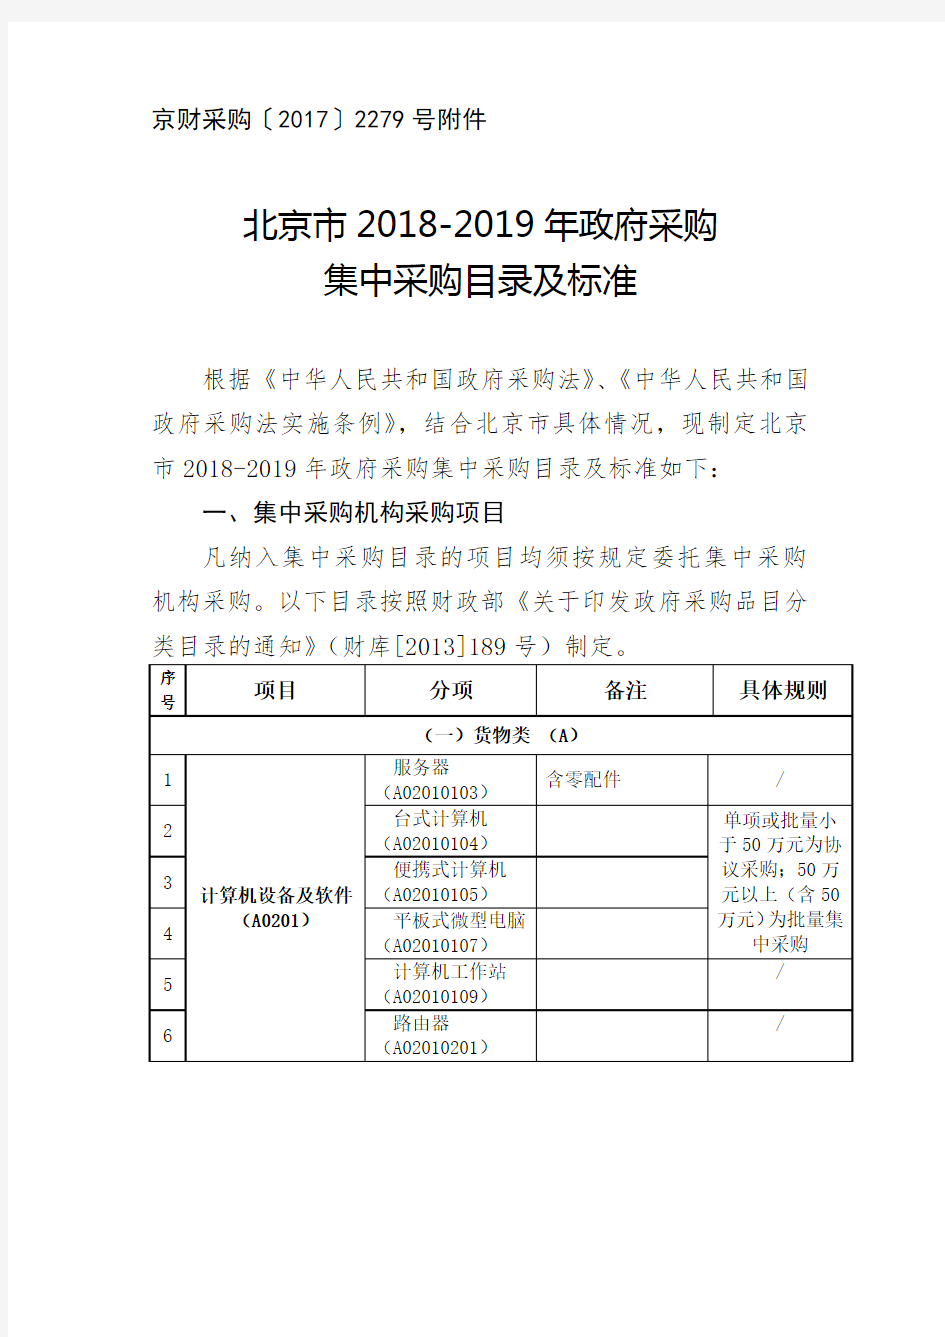 北京市2018-2019年政府采购集中采目录及标准